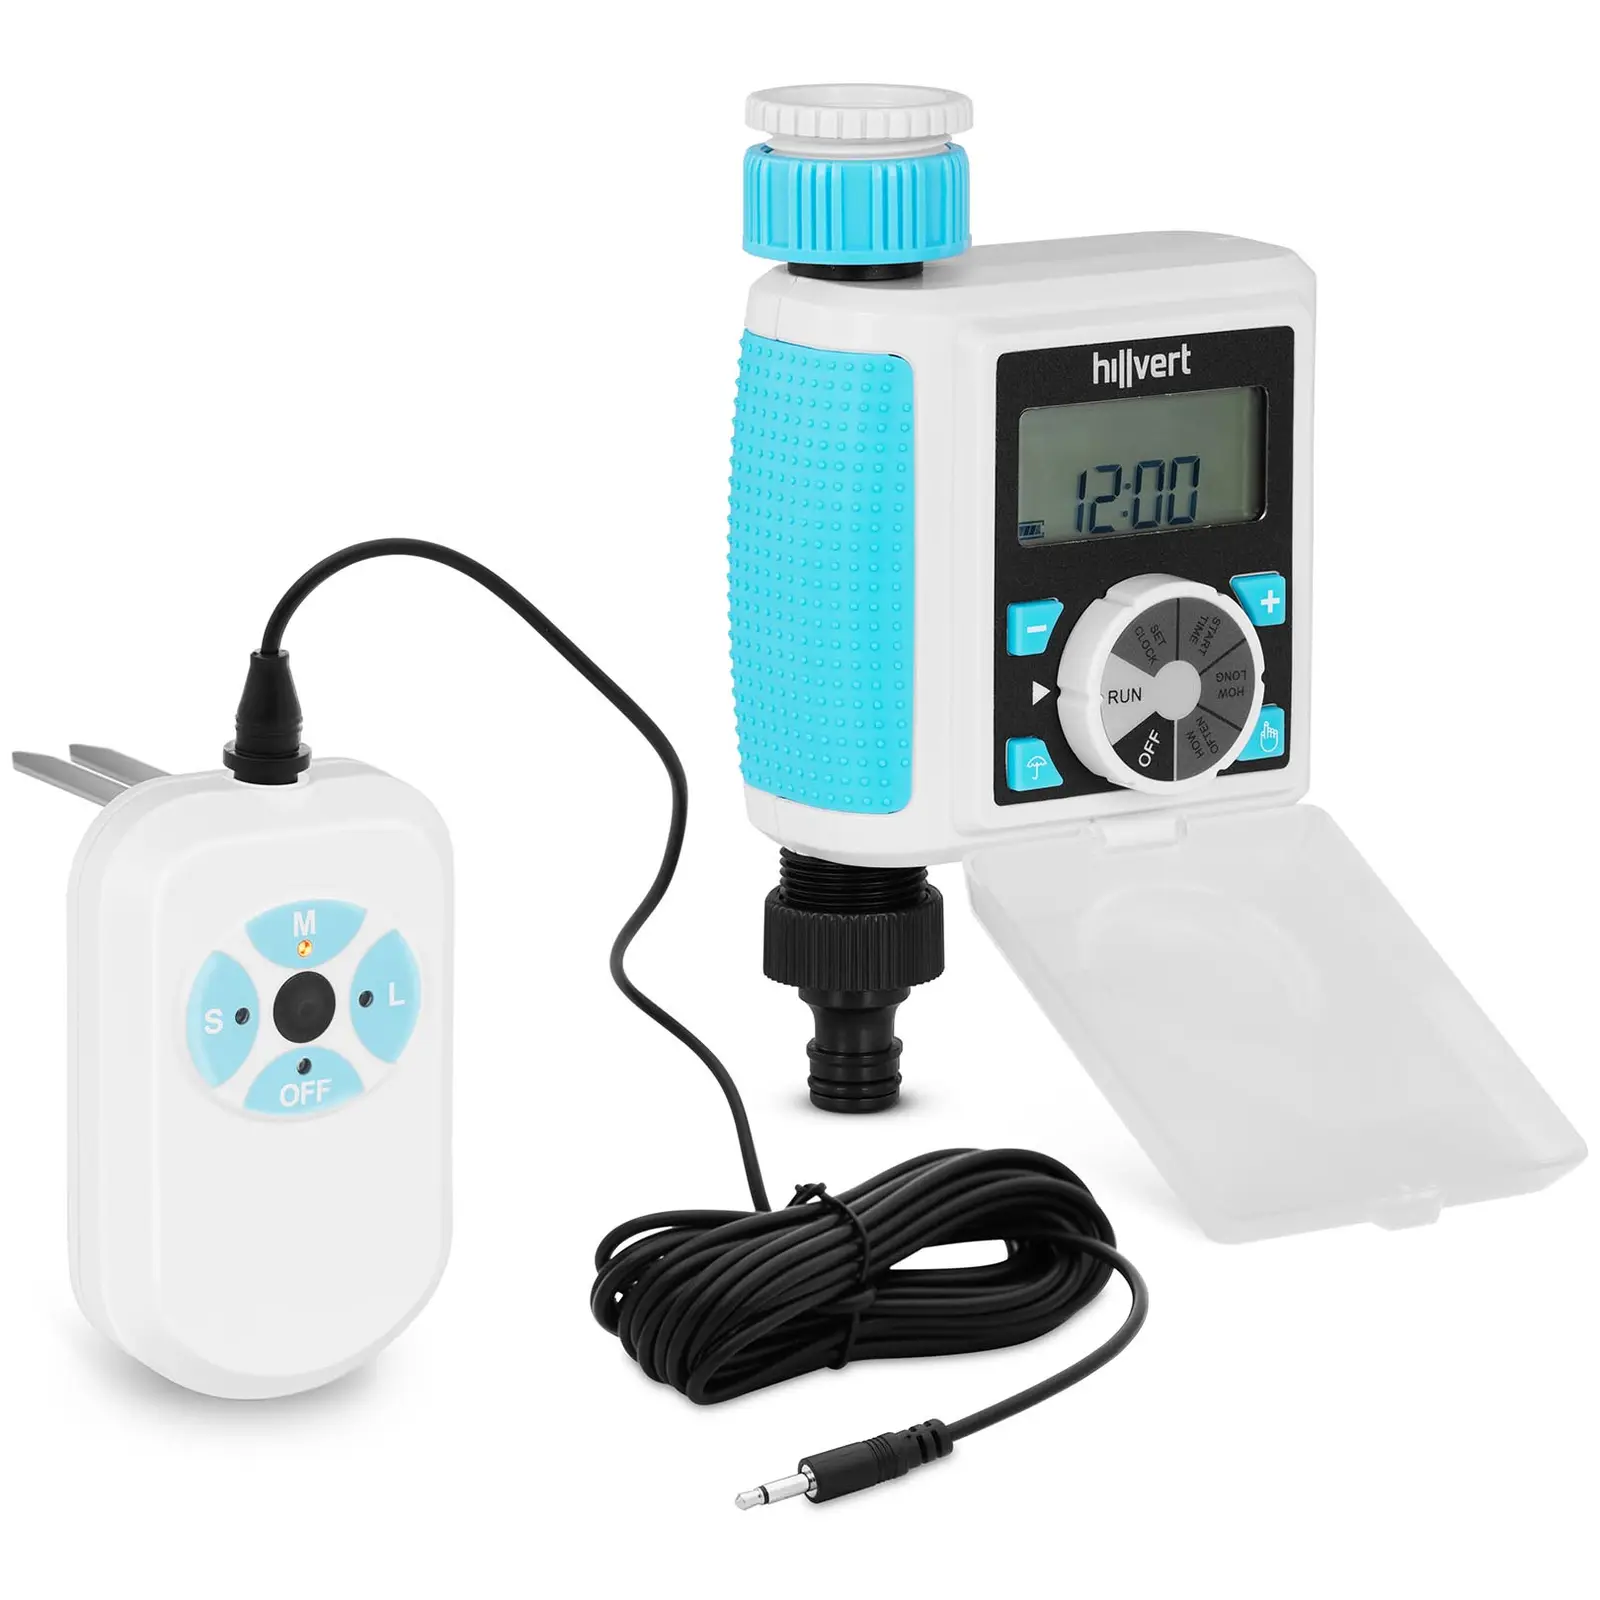 Programador de riego con sensor de humedad - Duración: 5 s - 360 min - Frecuencia hasta 7 días